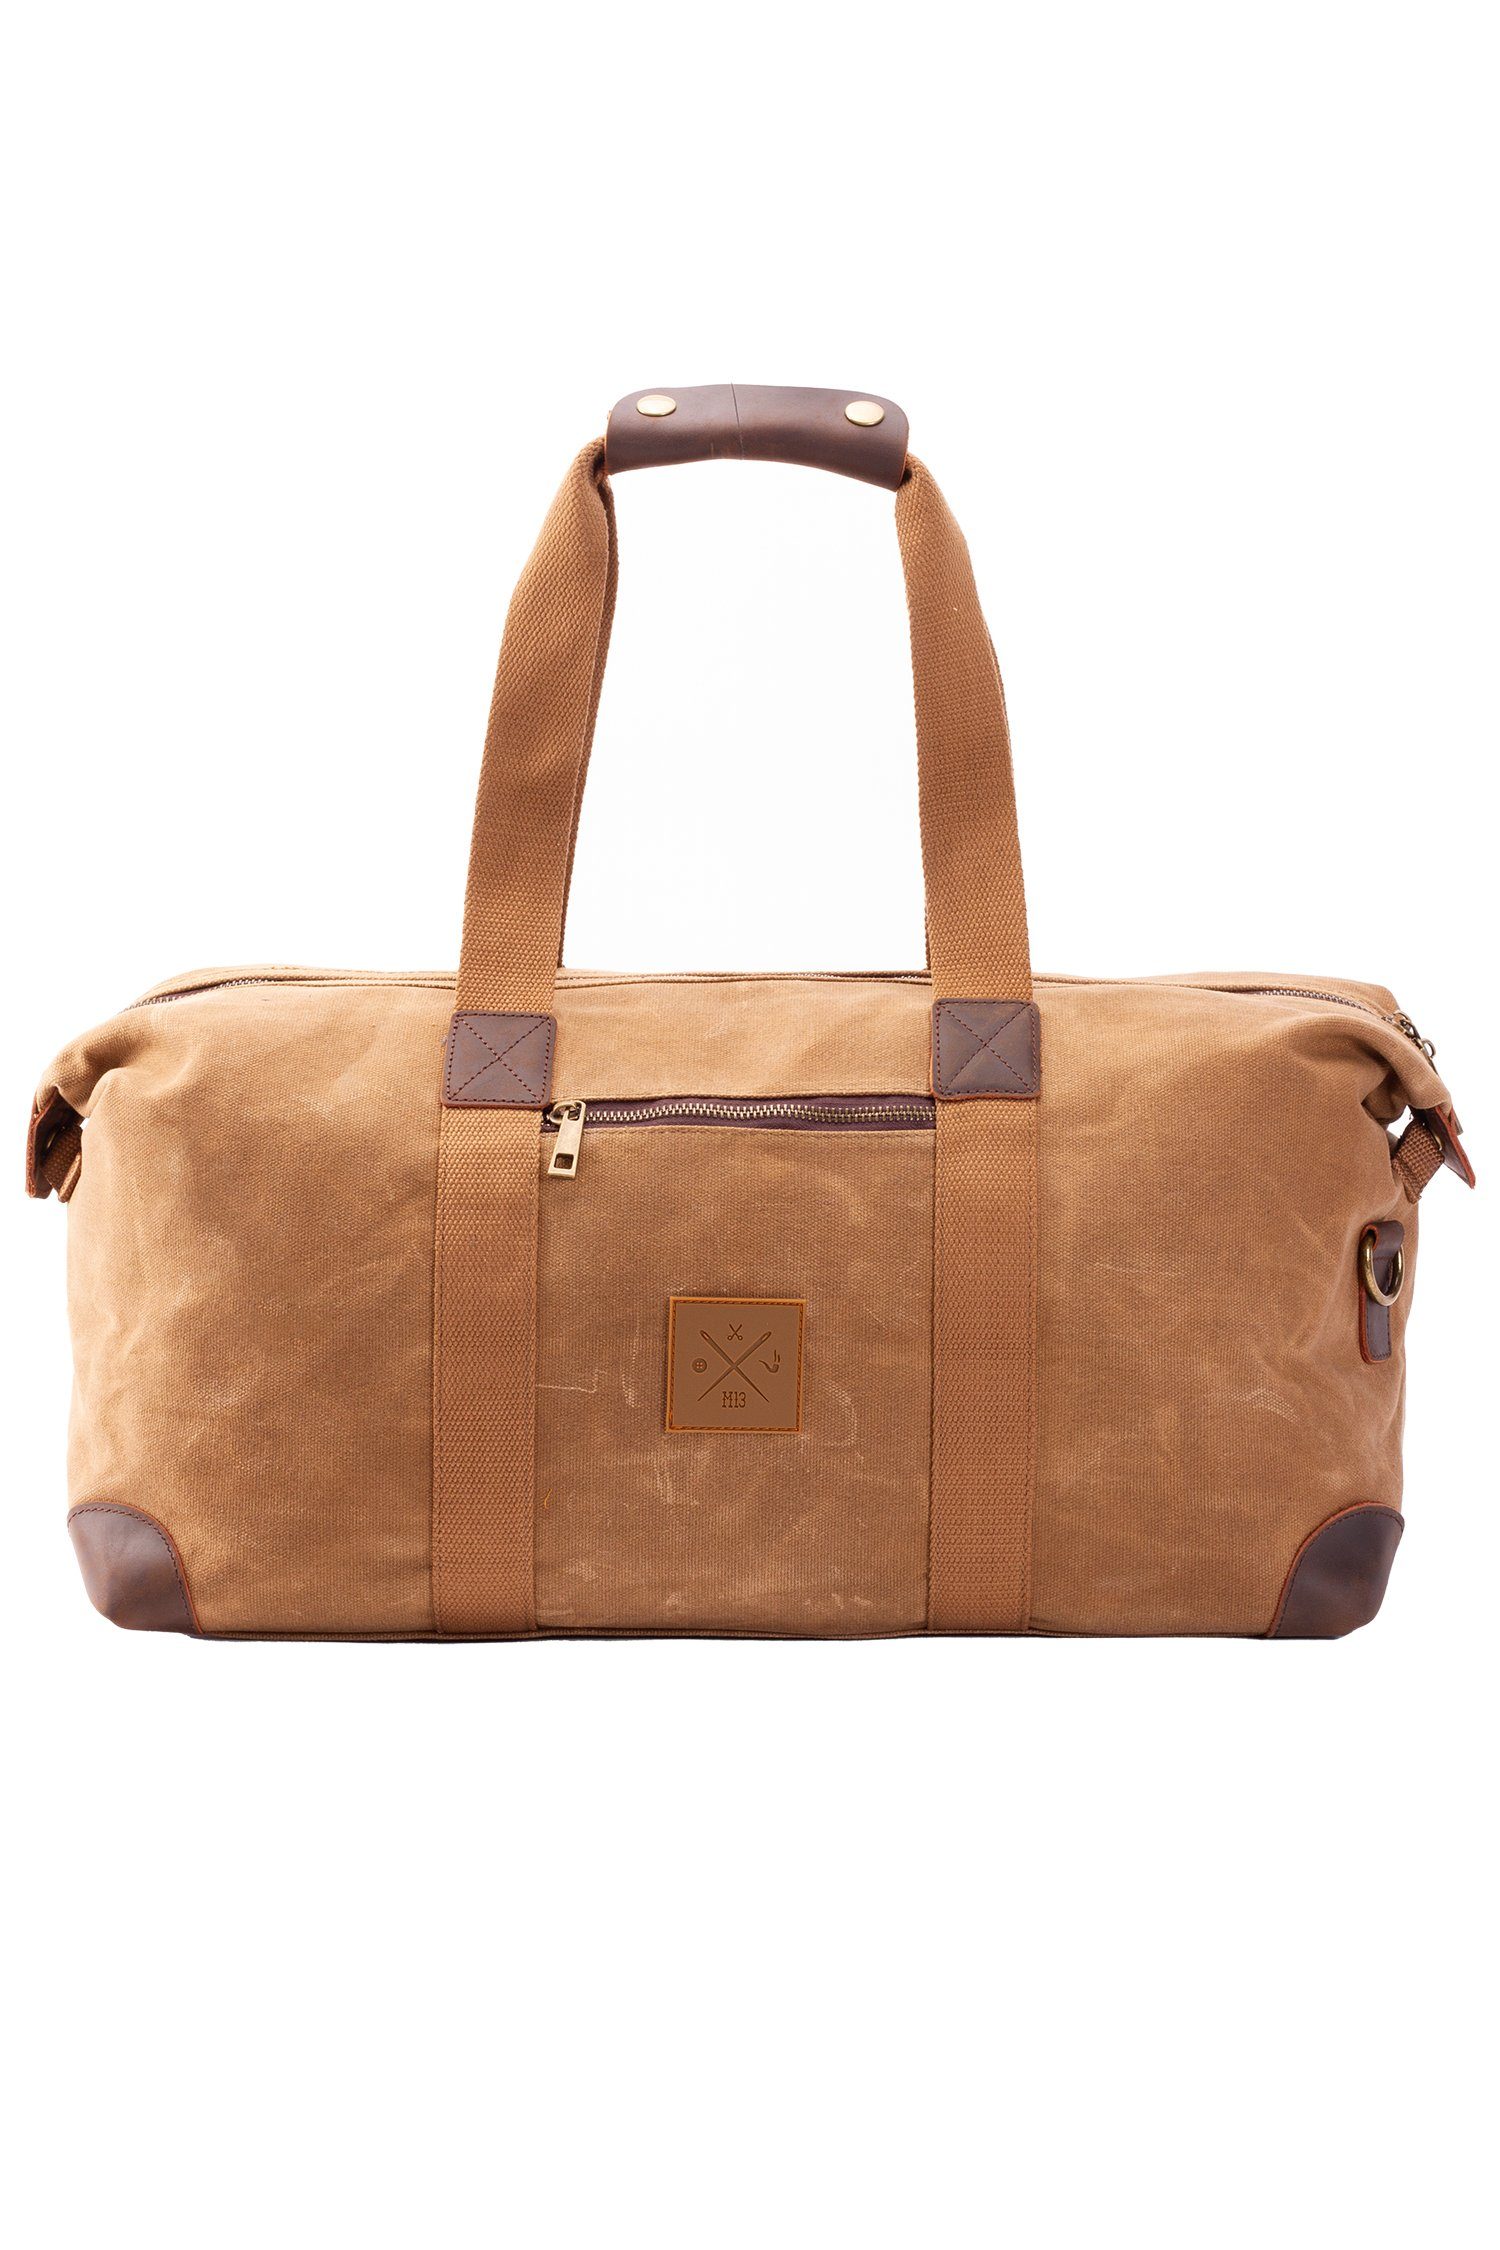 Sporttasche Canvas Baumwolle Weekender, 19L, - Duffel Bag Vintage Schultertasche, Reisetasche Manufaktur13